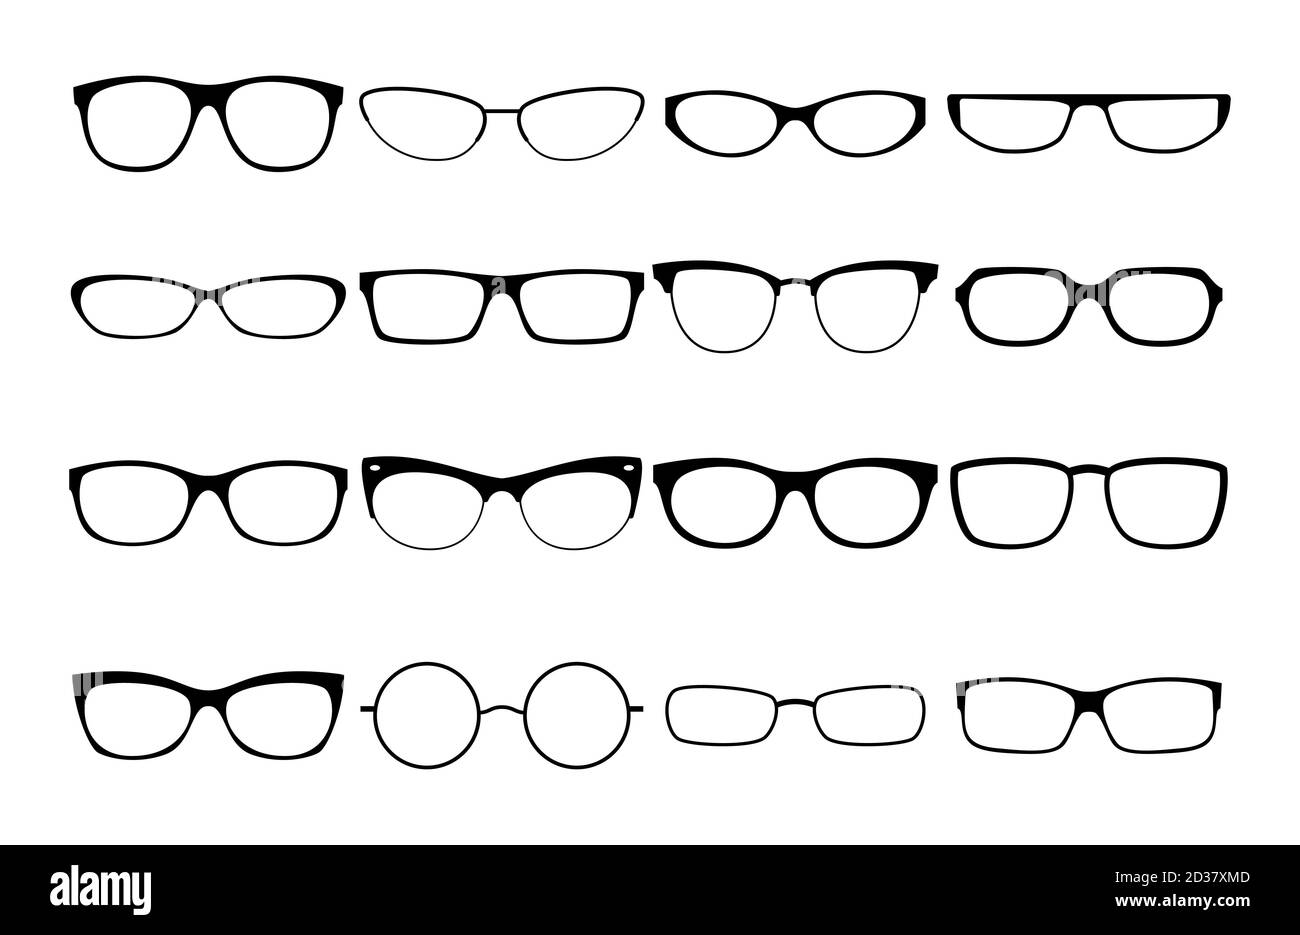 Cadres de lunettes vectorielles. Collection de lunettes de verre à bordure  noire, ensemble de modèles de mode pour monture de lunettes de vue,  silhouettes pour lunettes de soleil pour homme et femme